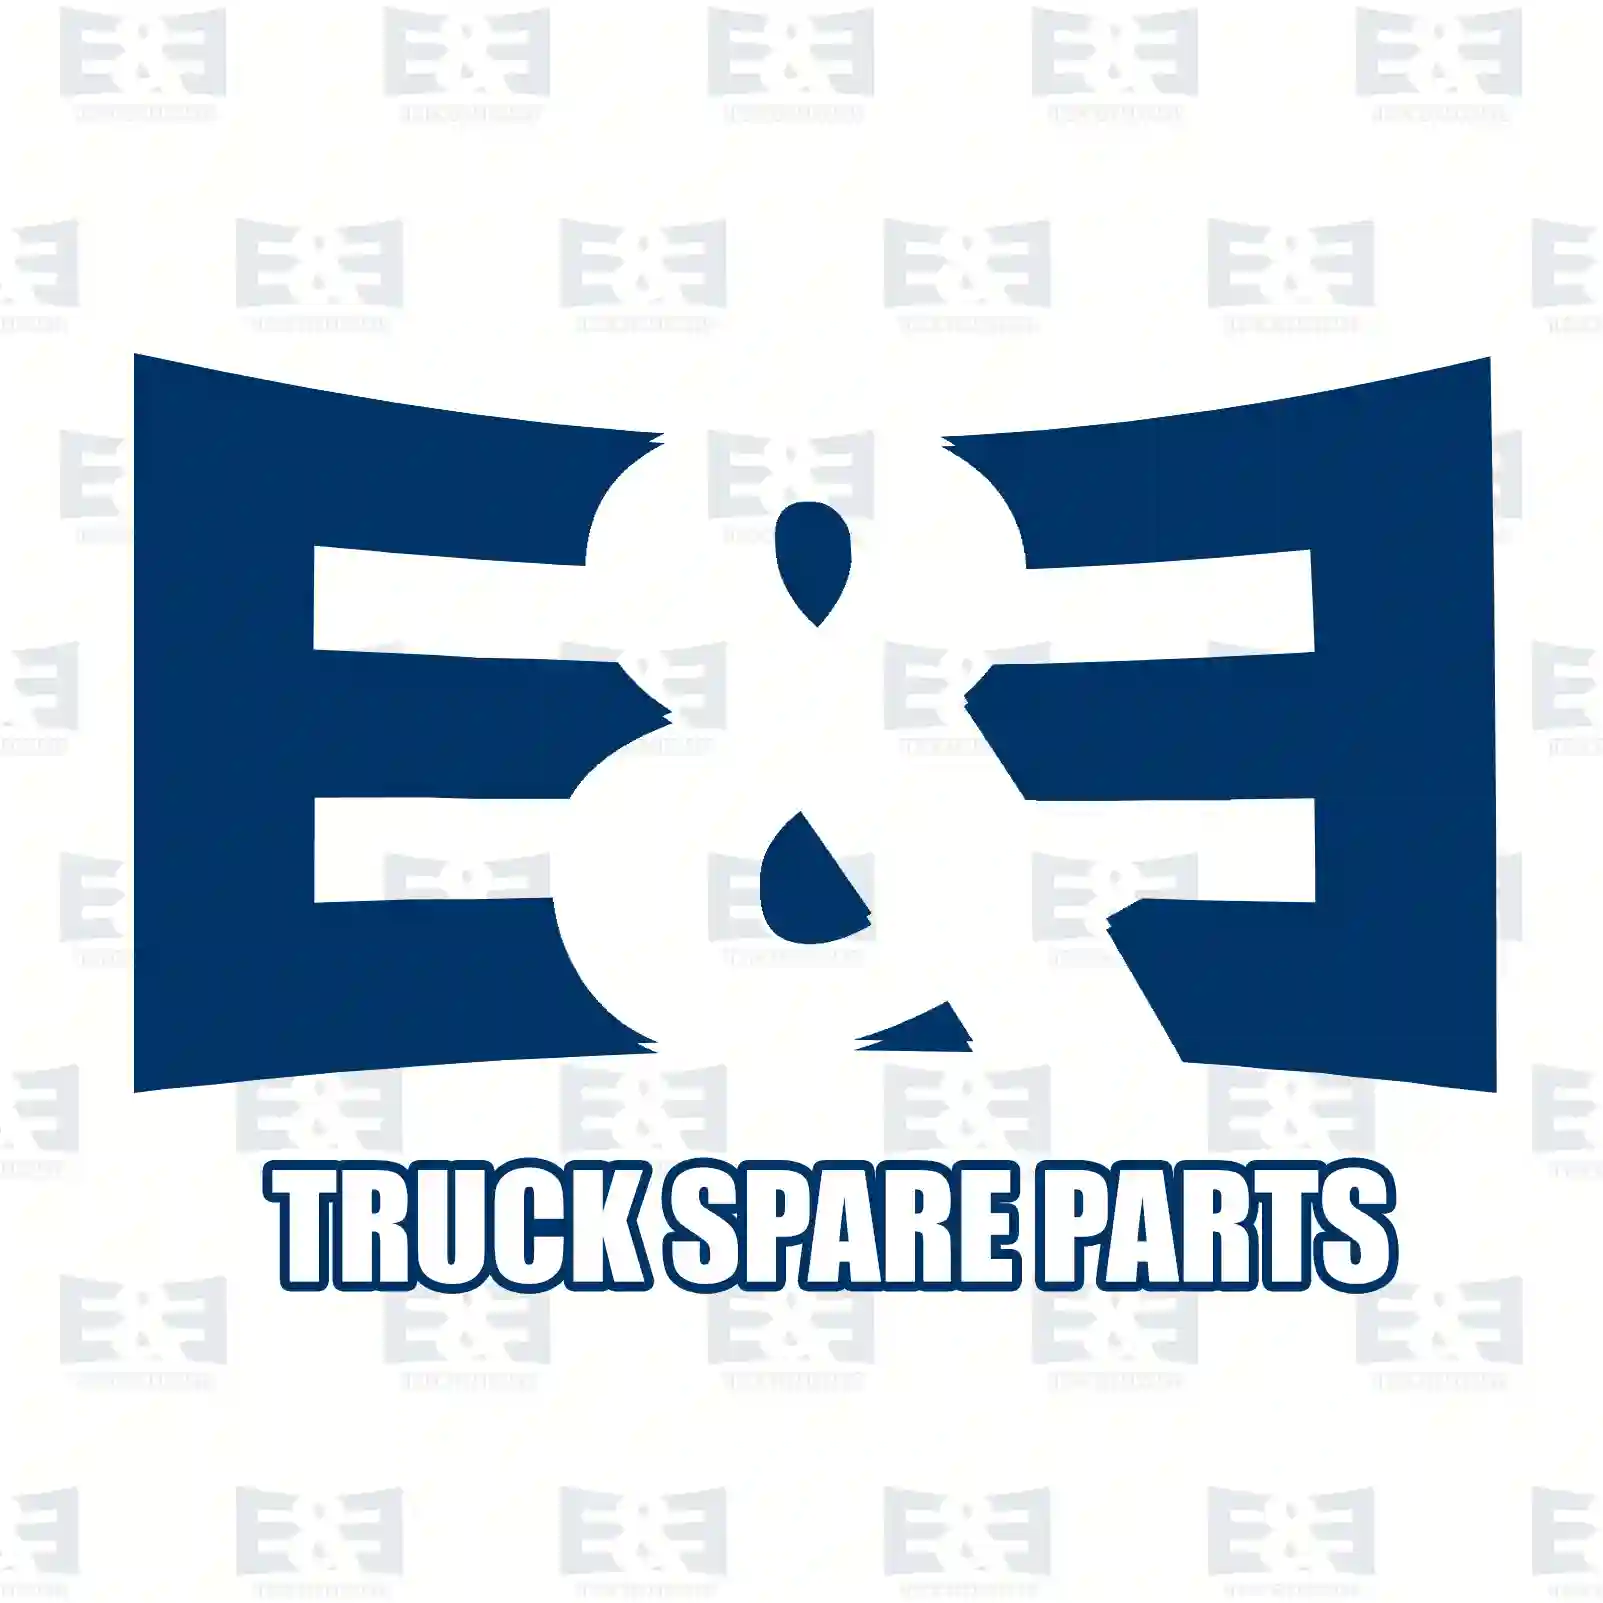 Level valve, 2E2283220, 0003277825, 0003278025, 0003285030 ||  2E2283220 E&E Truck Spare Parts | Truck Spare Parts, Auotomotive Spare Parts Level valve, 2E2283220, 0003277825, 0003278025, 0003285030 ||  2E2283220 E&E Truck Spare Parts | Truck Spare Parts, Auotomotive Spare Parts